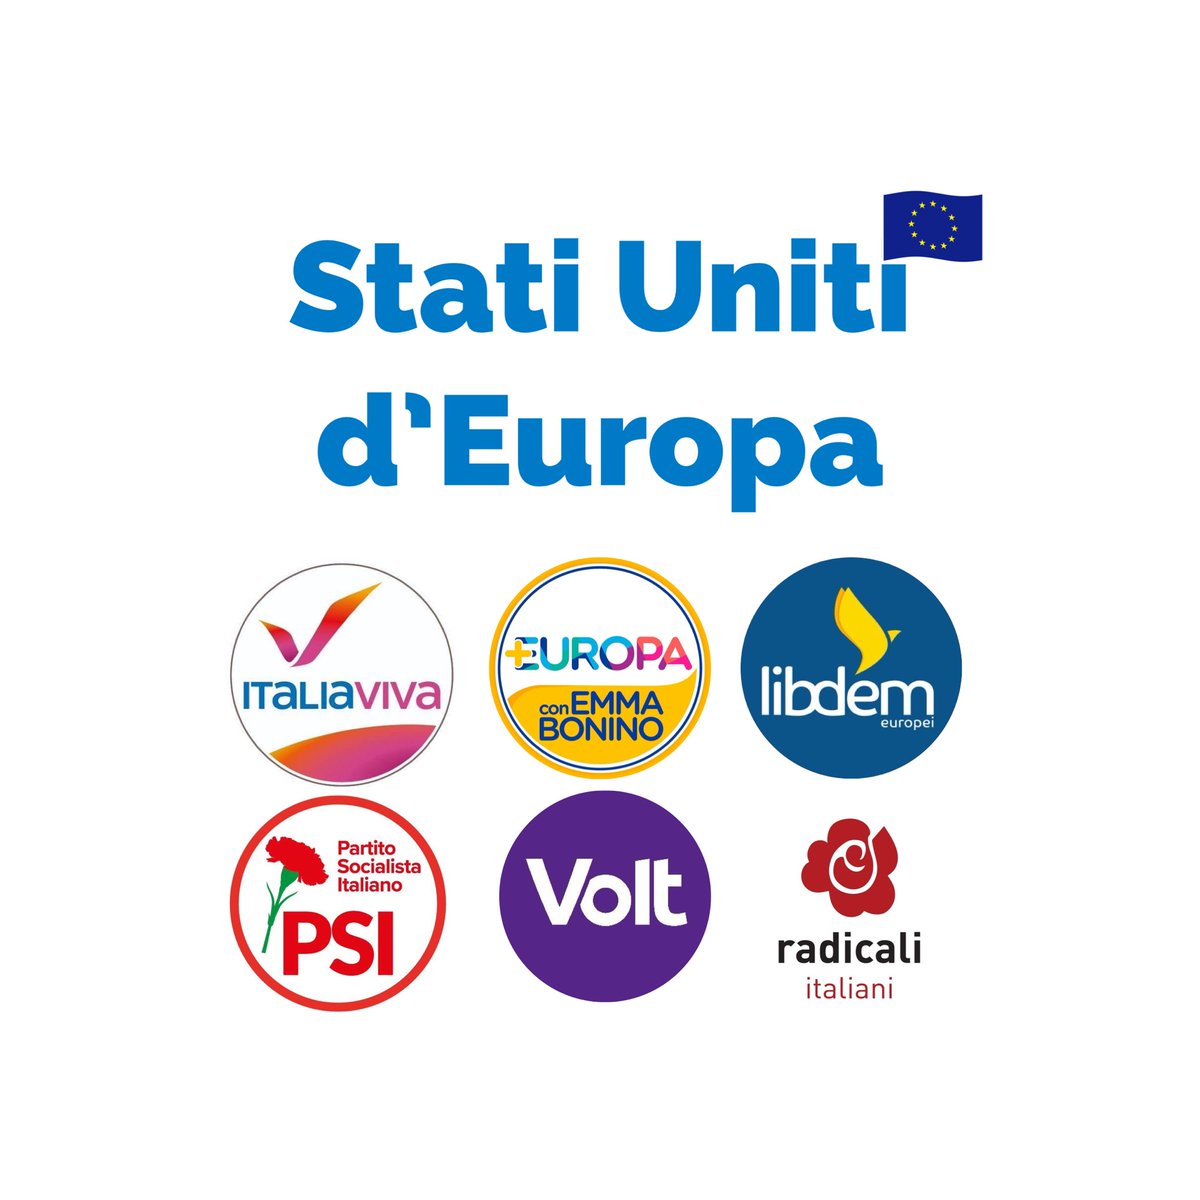 Al LAVORO per costruire una lista europeista, coraggiosa e aperta. Avanti con gli #StatiUnitiEuropa! 🇪🇺